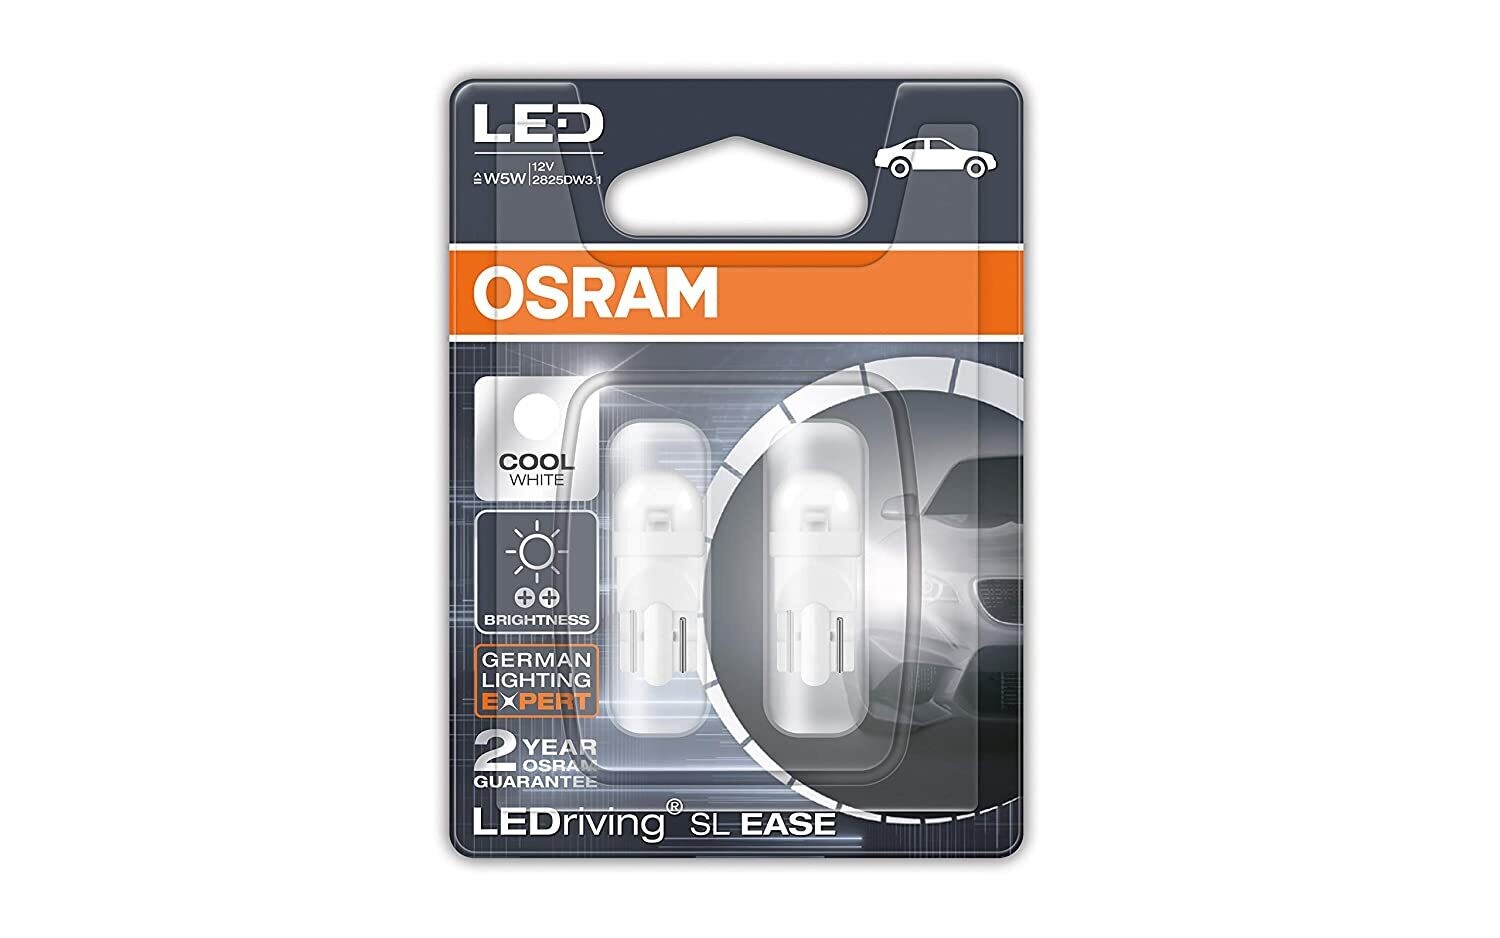 Osram LED Parking Light T10 (White, 2 Bulbs) - Pair of 3